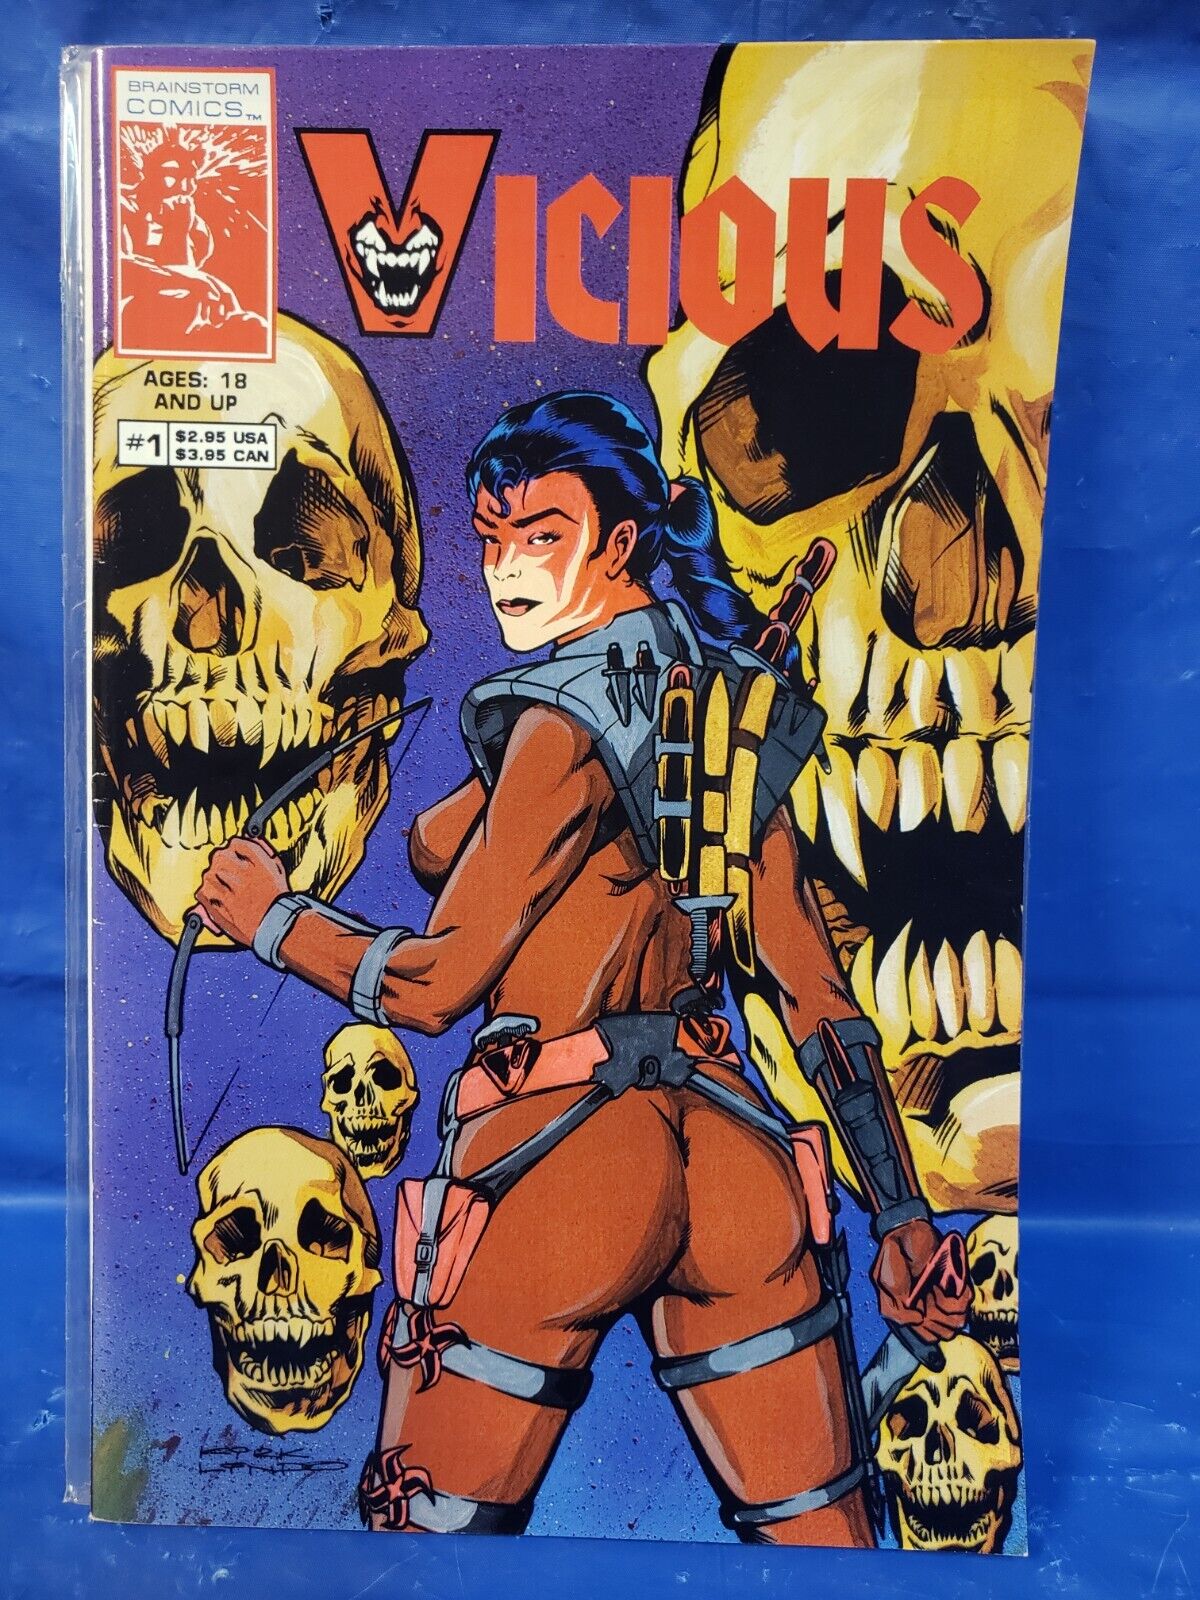 Vicious # 1 Brainstorm Comics Comic Book